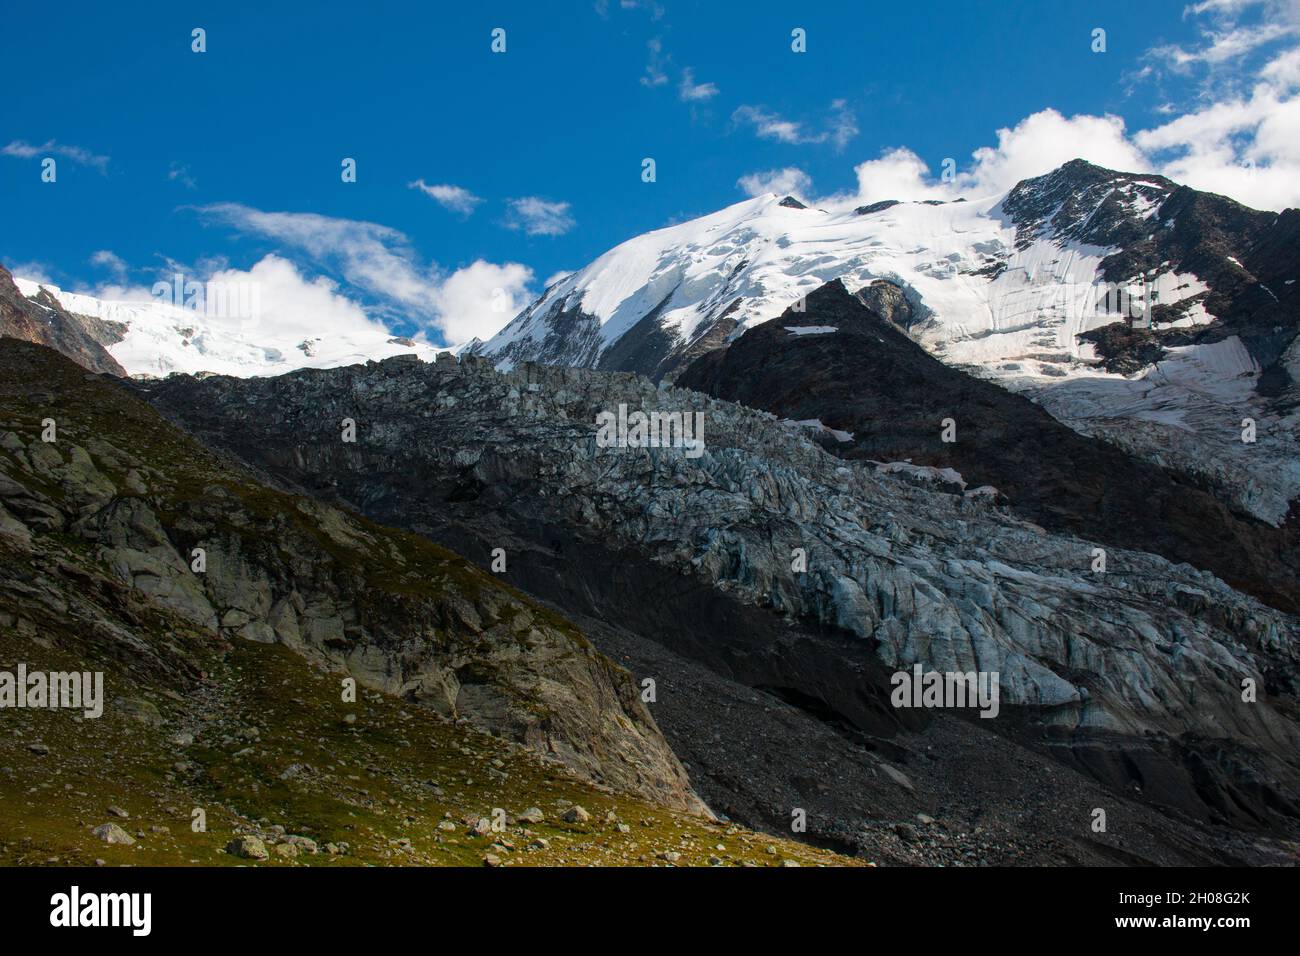 Vue sur un glacier de Bionnassay depuis le sentier de randonnée jusqu'à Nid  d'Aigle, massif du Mont blanc, Alpes françaises, septembre Photo Stock -  Alamy